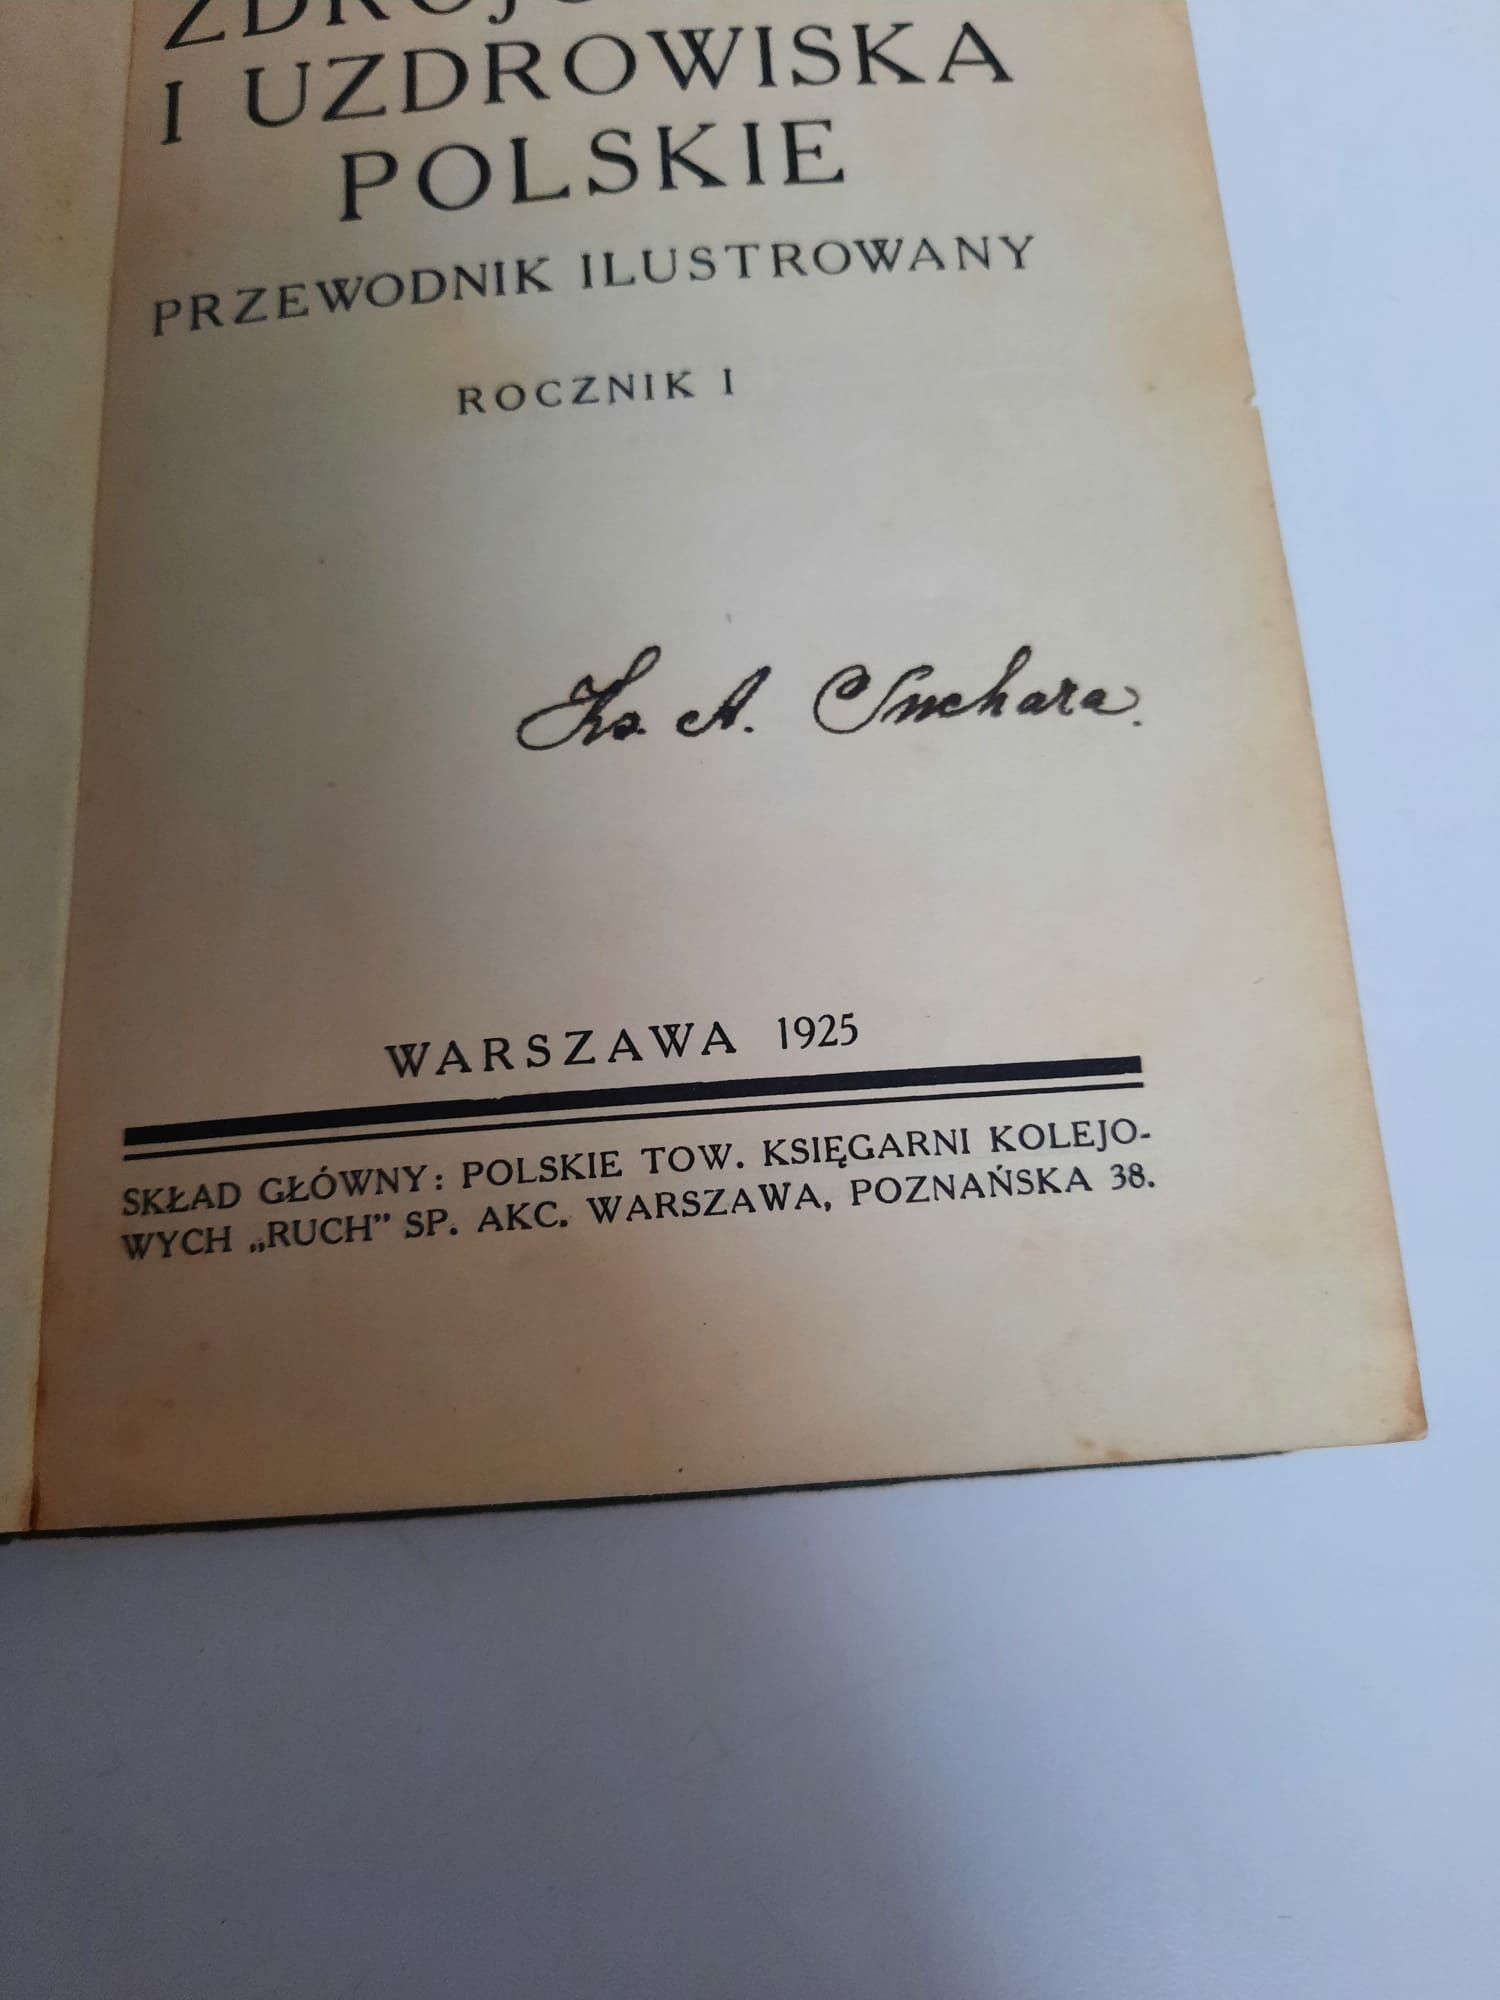 Zdrojowiska I Uzdrowiska Polskie przewodnik 1925